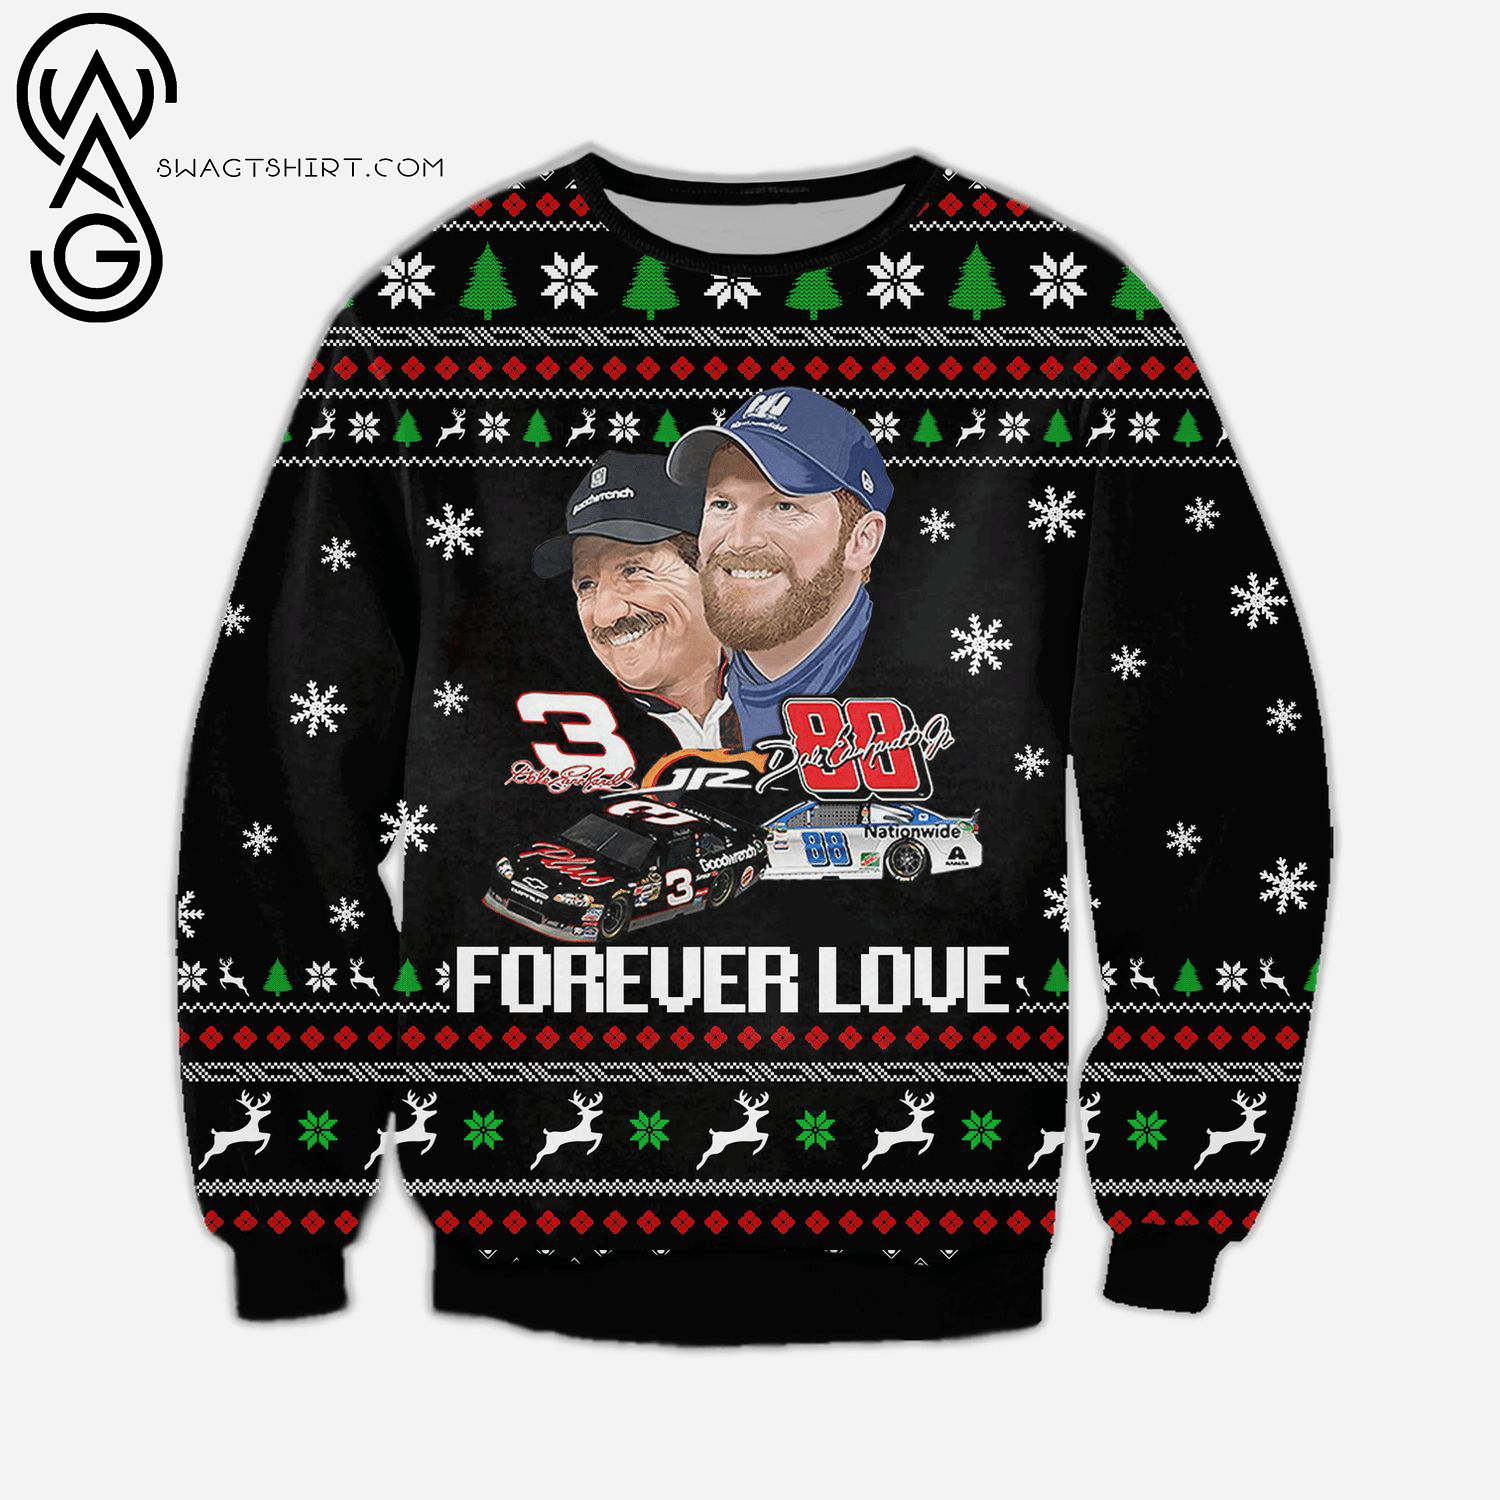 Dale Earnhardt Forever Love Full Print Ugly Christmas Sweater